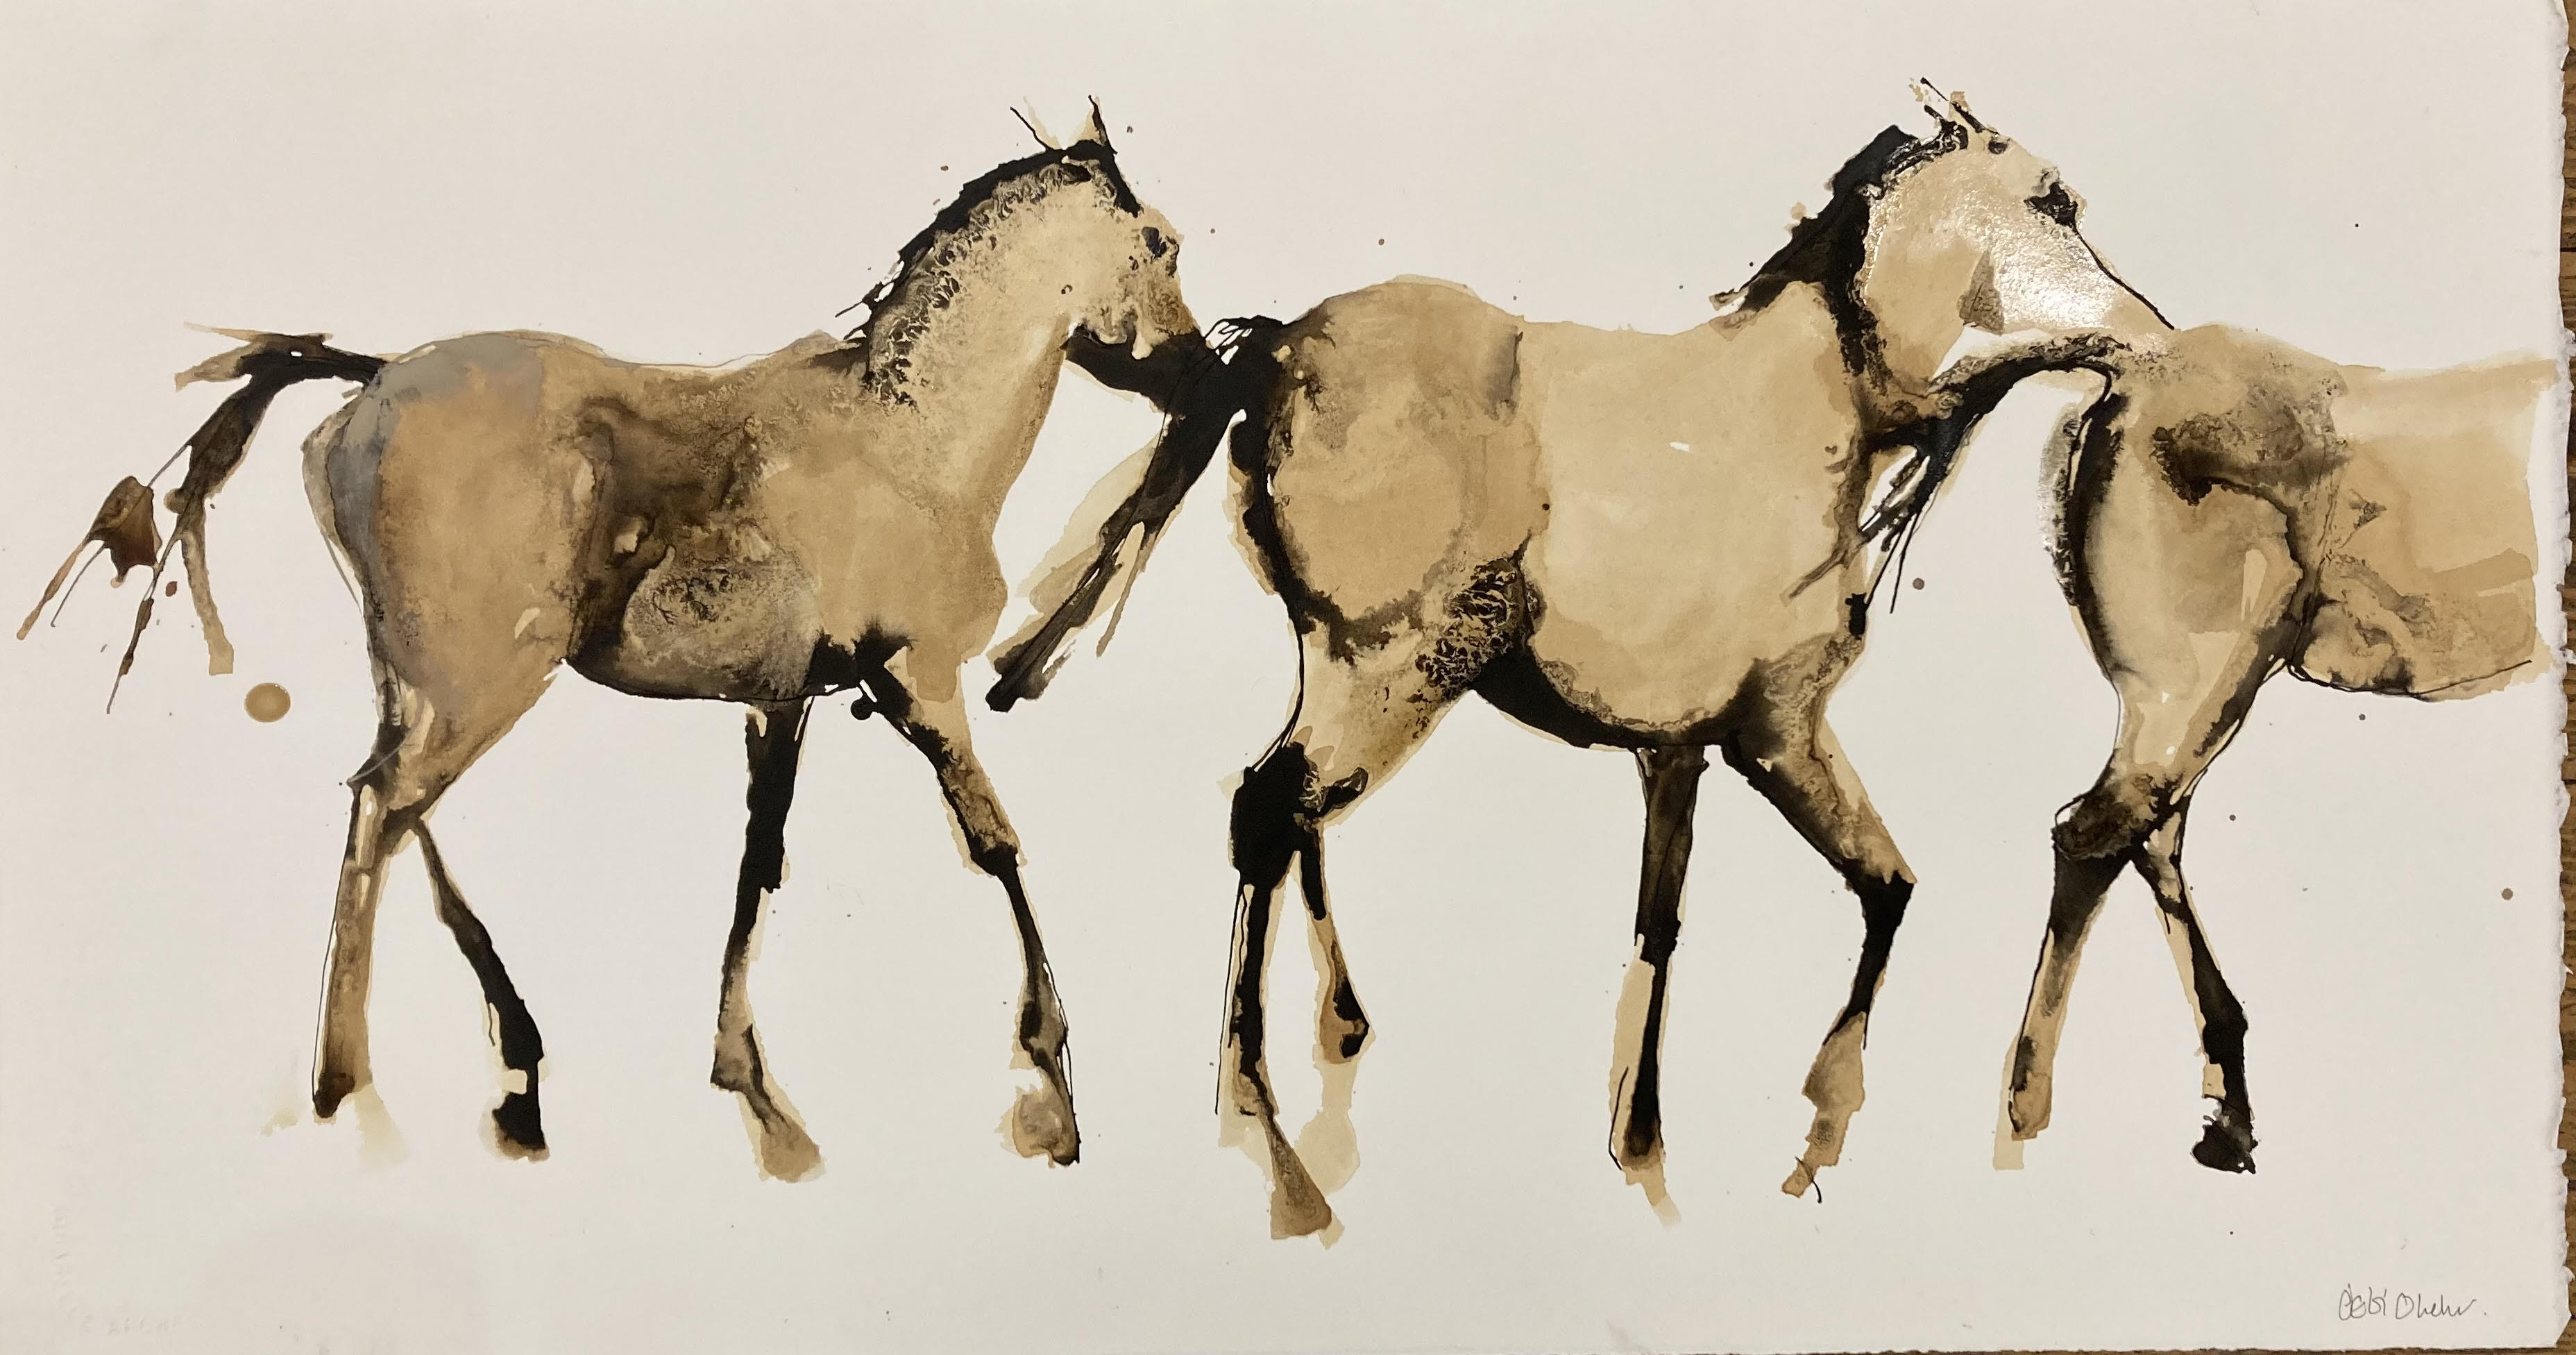 Study of Walking Horses by Debi O'Hehir